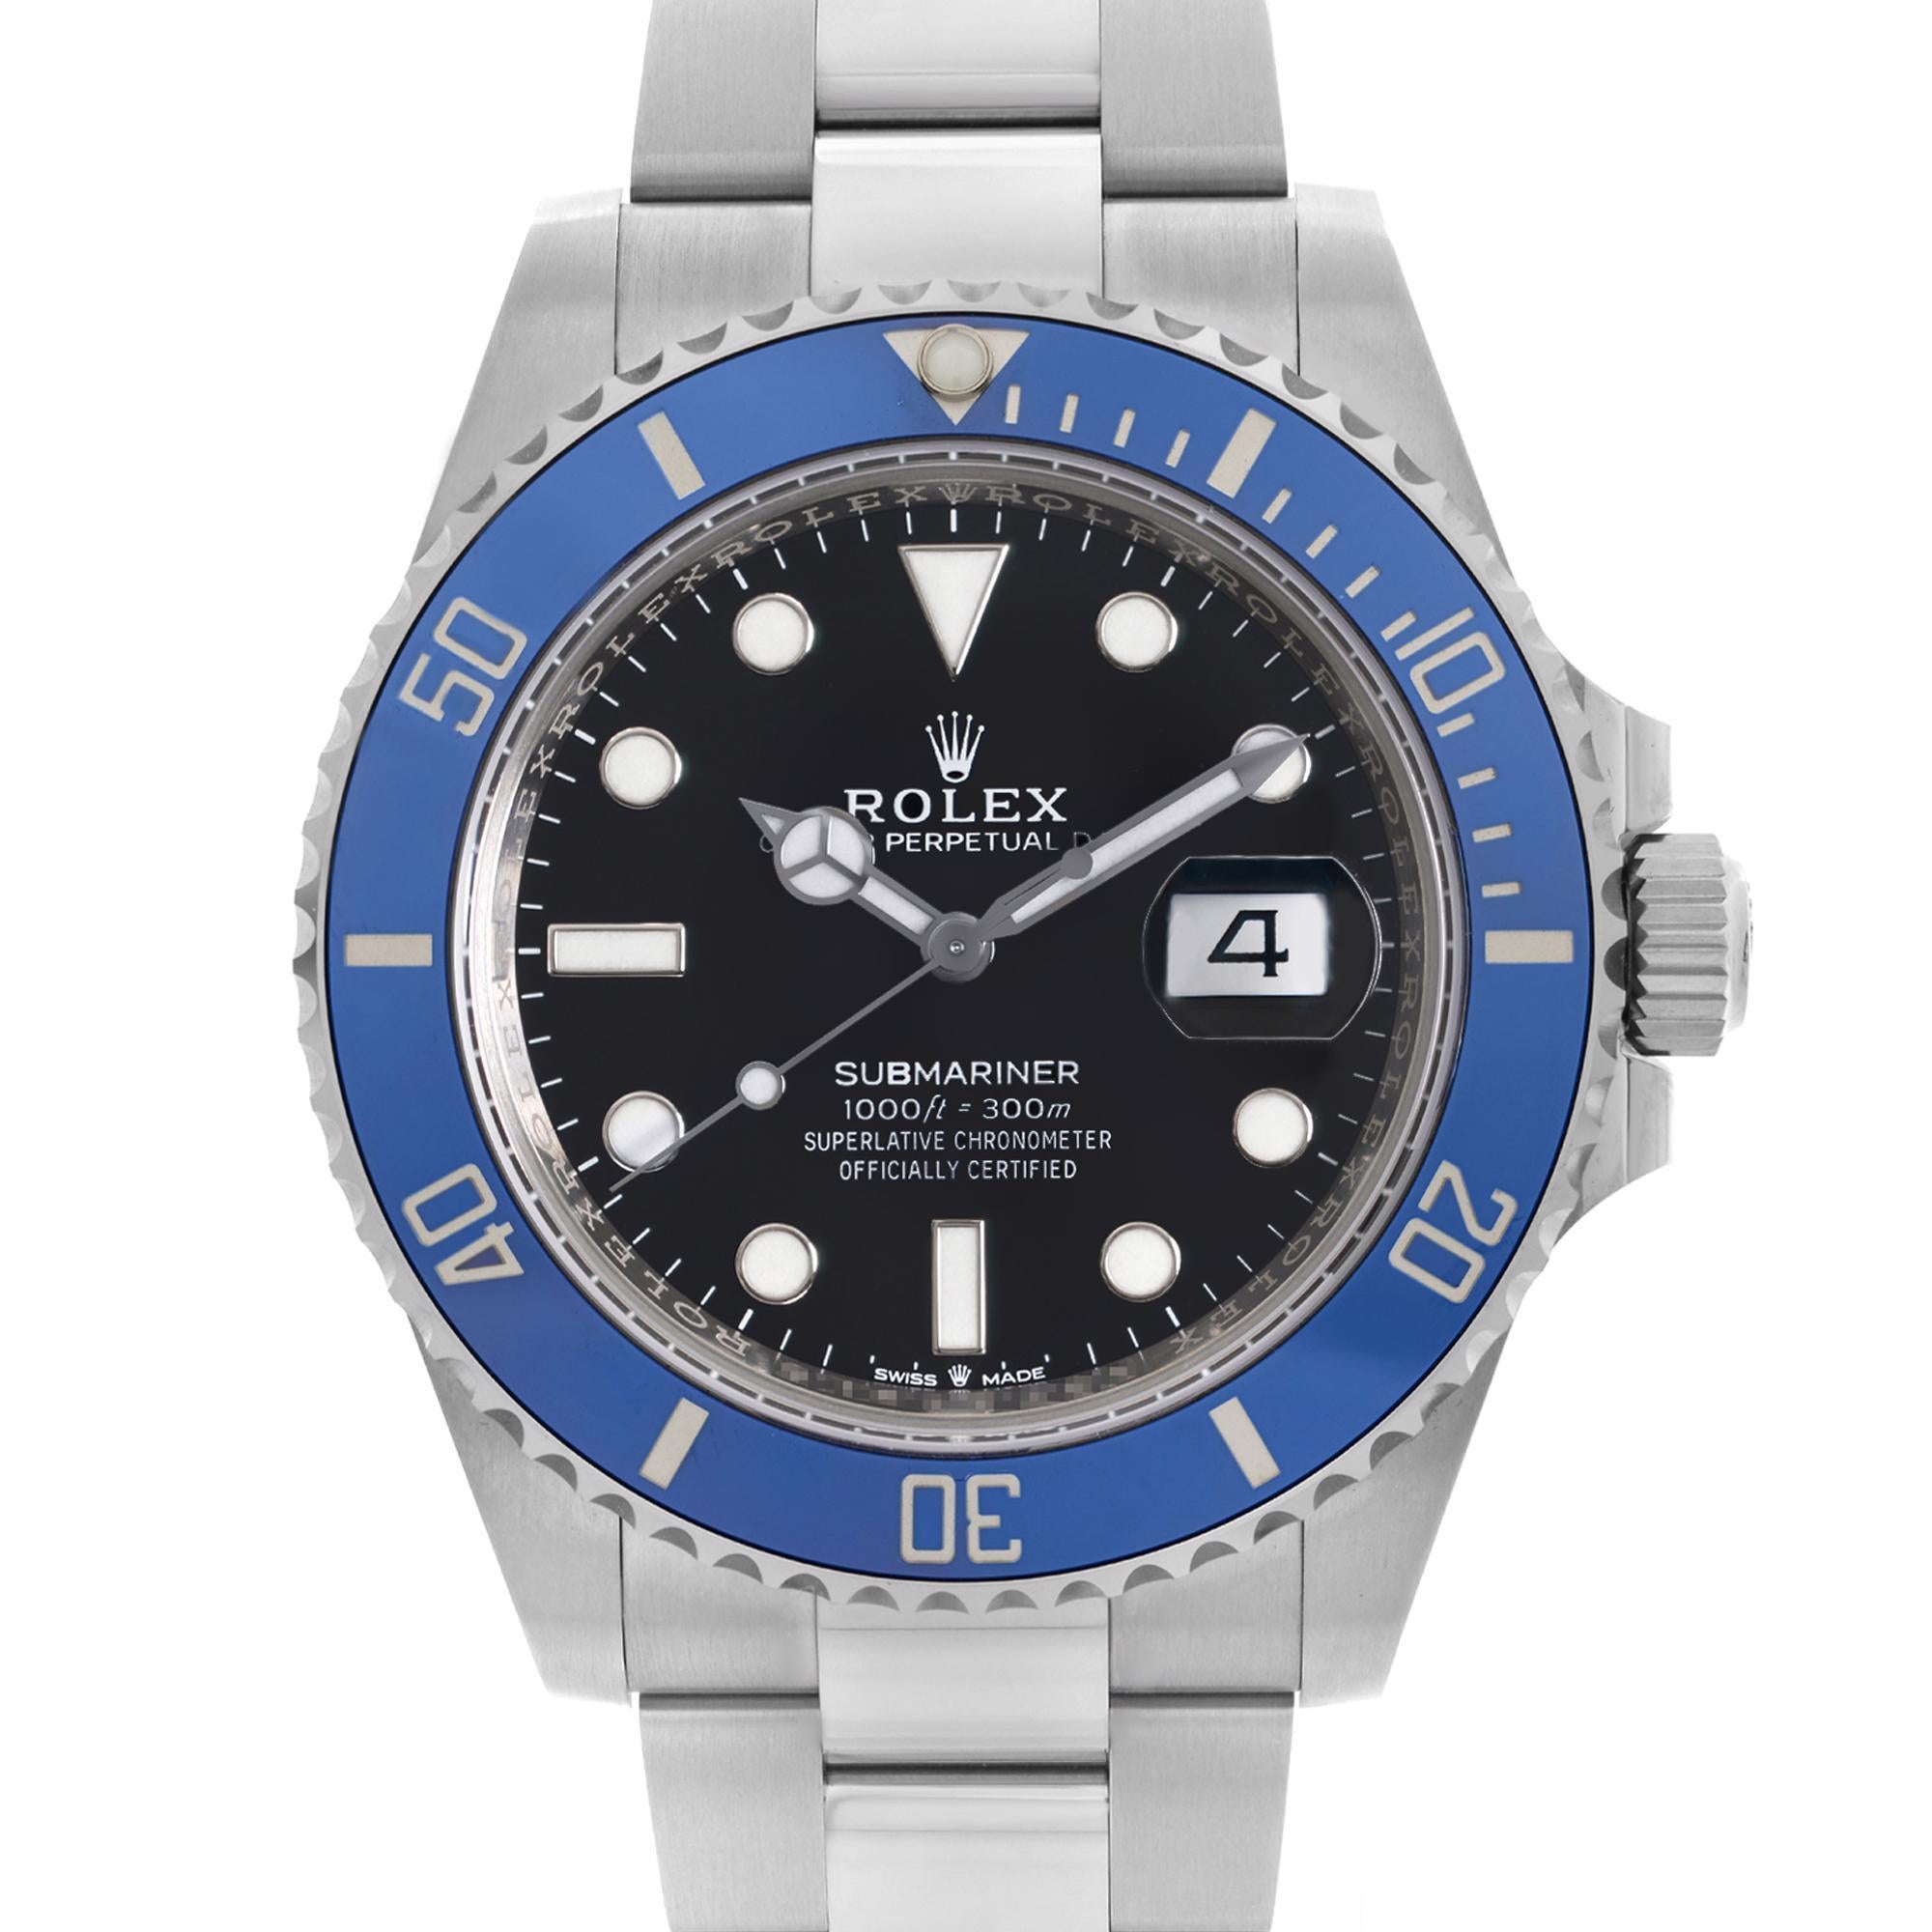 Whiting Rolex Submariner Date Oyster Perpetual 41mm 18k White Gold Black Dial Mens Automatic Watch 126619LB. La montre est livrée avec une carte 2021. Ce garde-temps est animé par un mouvement mécanique (automatique) et présente les caractéristiques